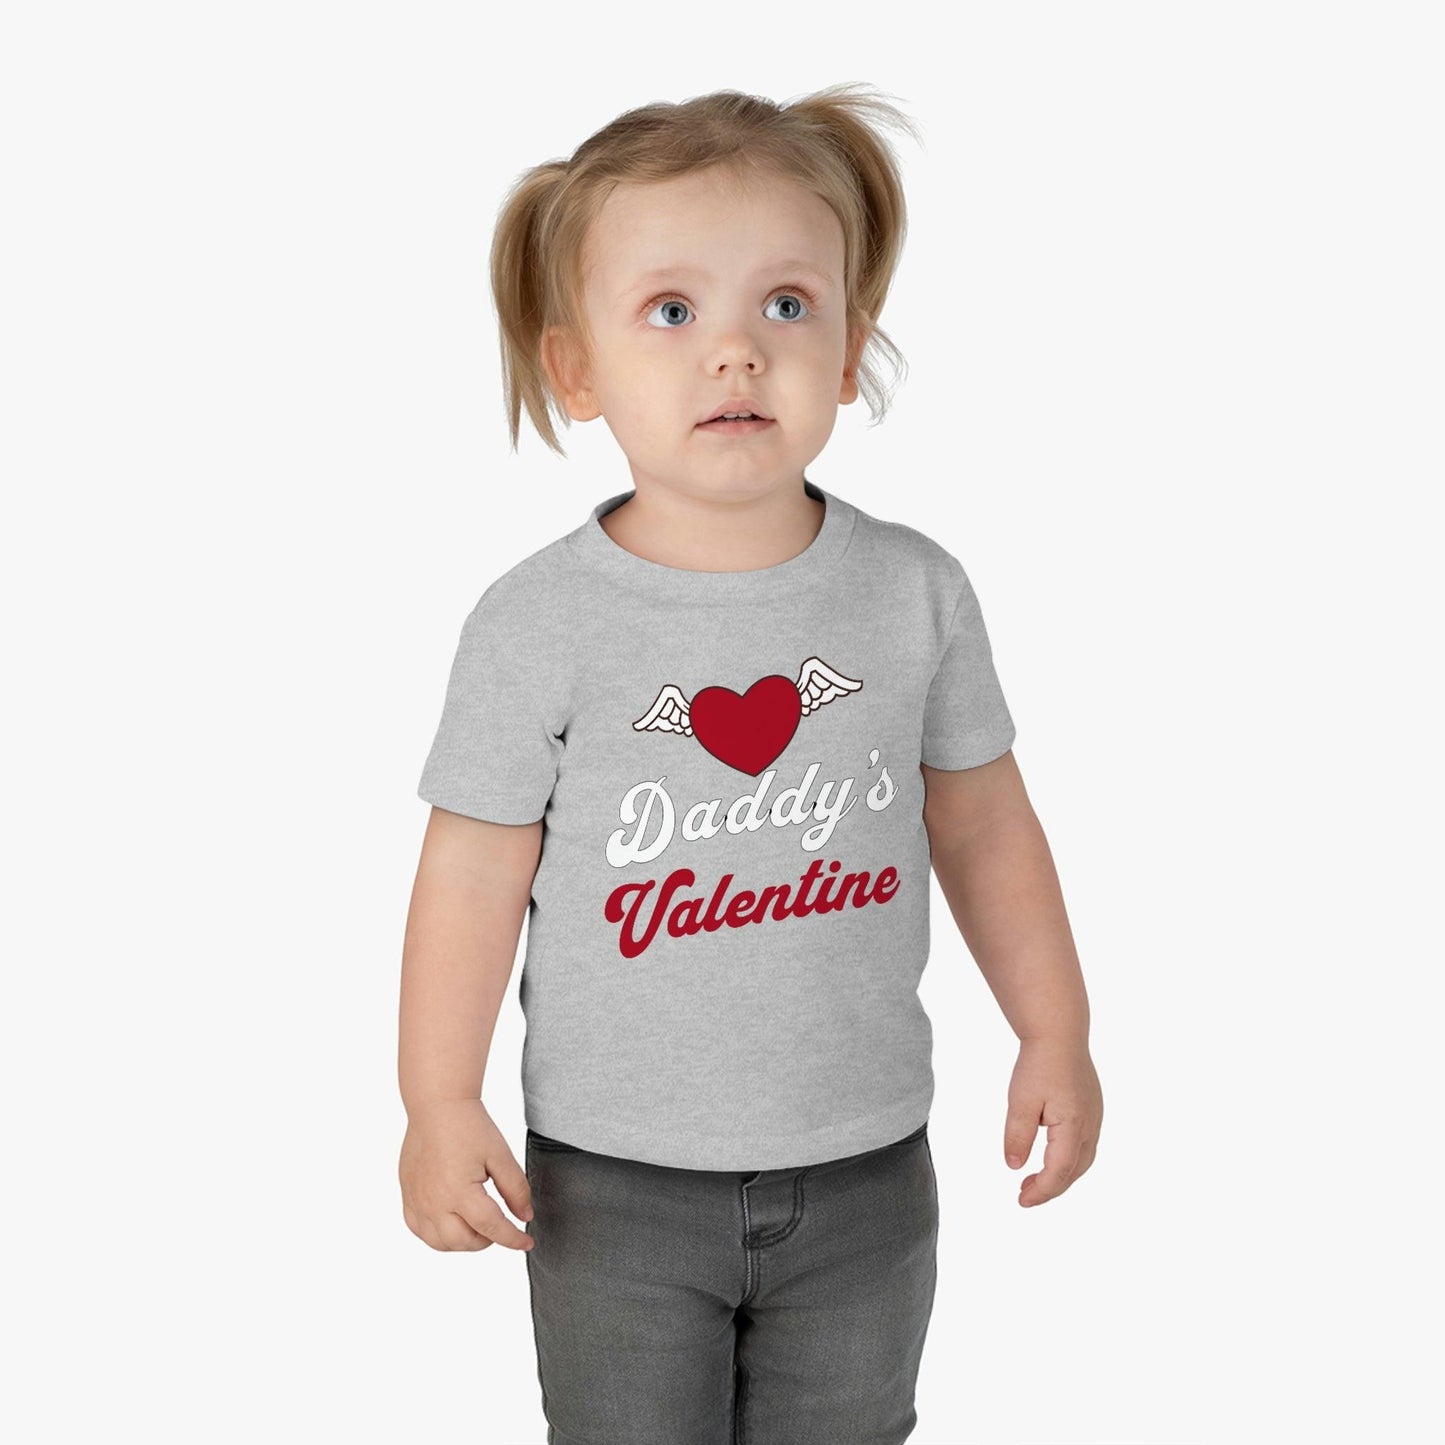 Kids Valentine day shirt - Kids Valentine Gift